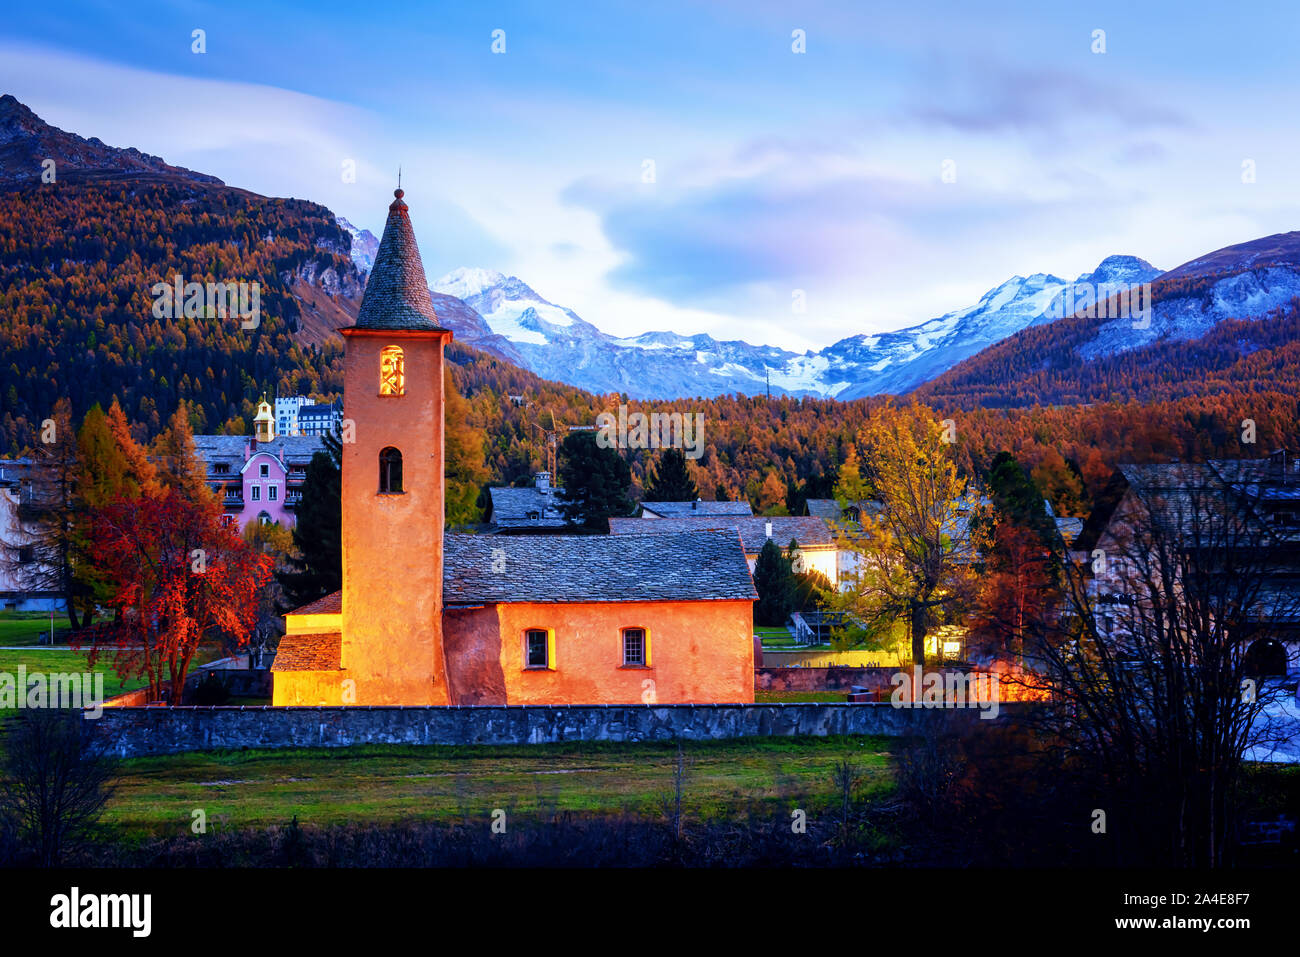 Vieux christianisme Église dans le village de Sils (près du Lac de Sils) dans les Alpes suisses. La lumière rouge sur la construction et les montagnes enneigées sur l'arrière-plan. La Suisse, Maloja, région de l'Haute Engadine. Photographie de paysage Banque D'Images